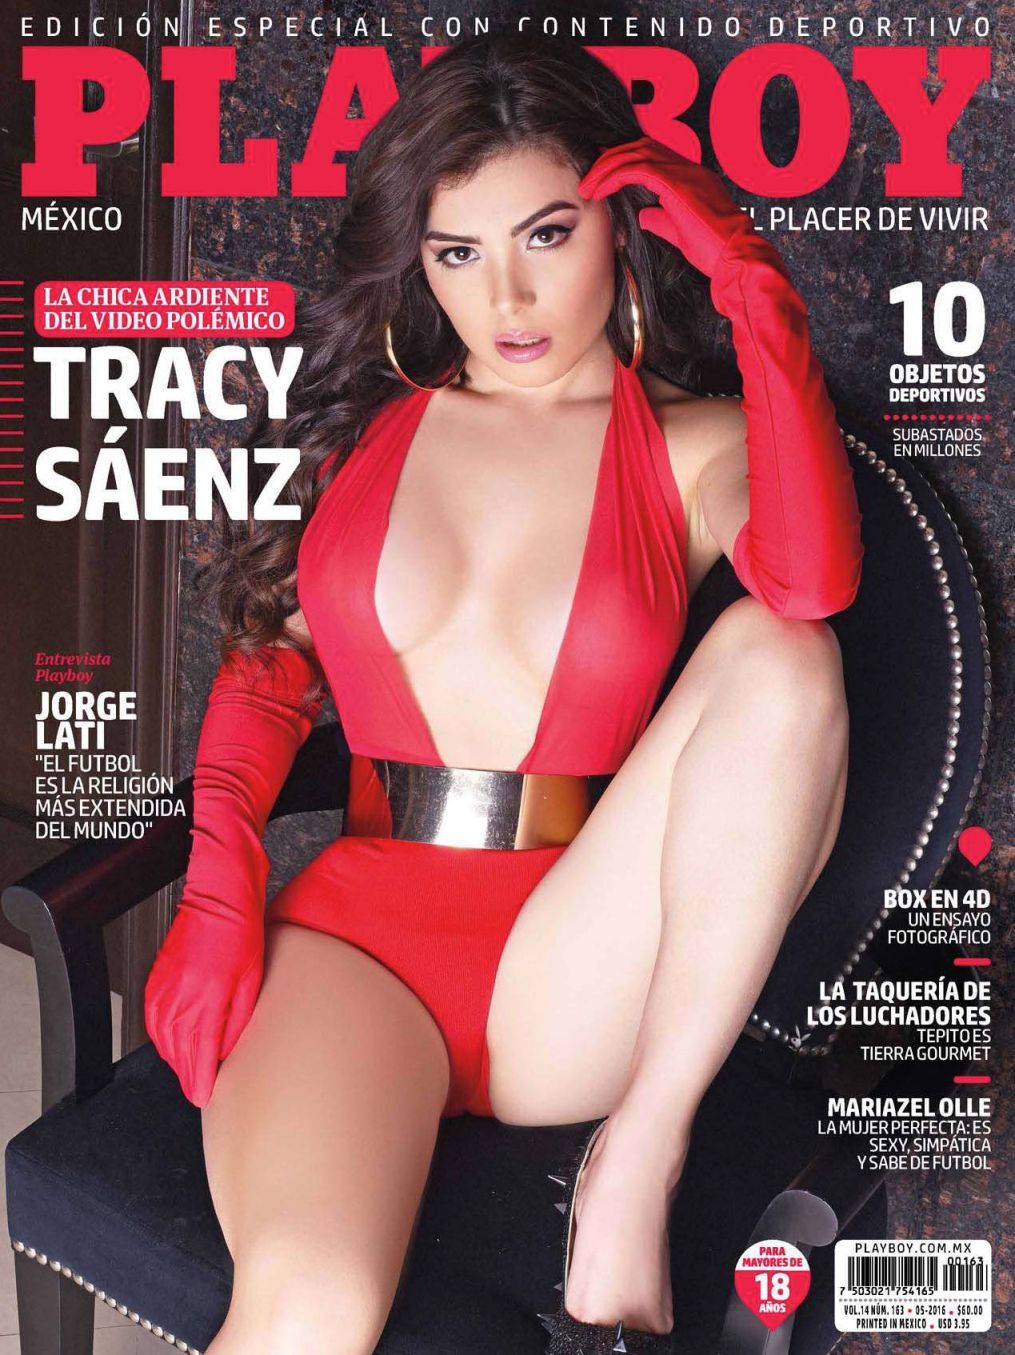 fotosyvideos2:   Tracy Saenz Revista Playboy   Modelo y actriz Mexicana Tracy Saenz